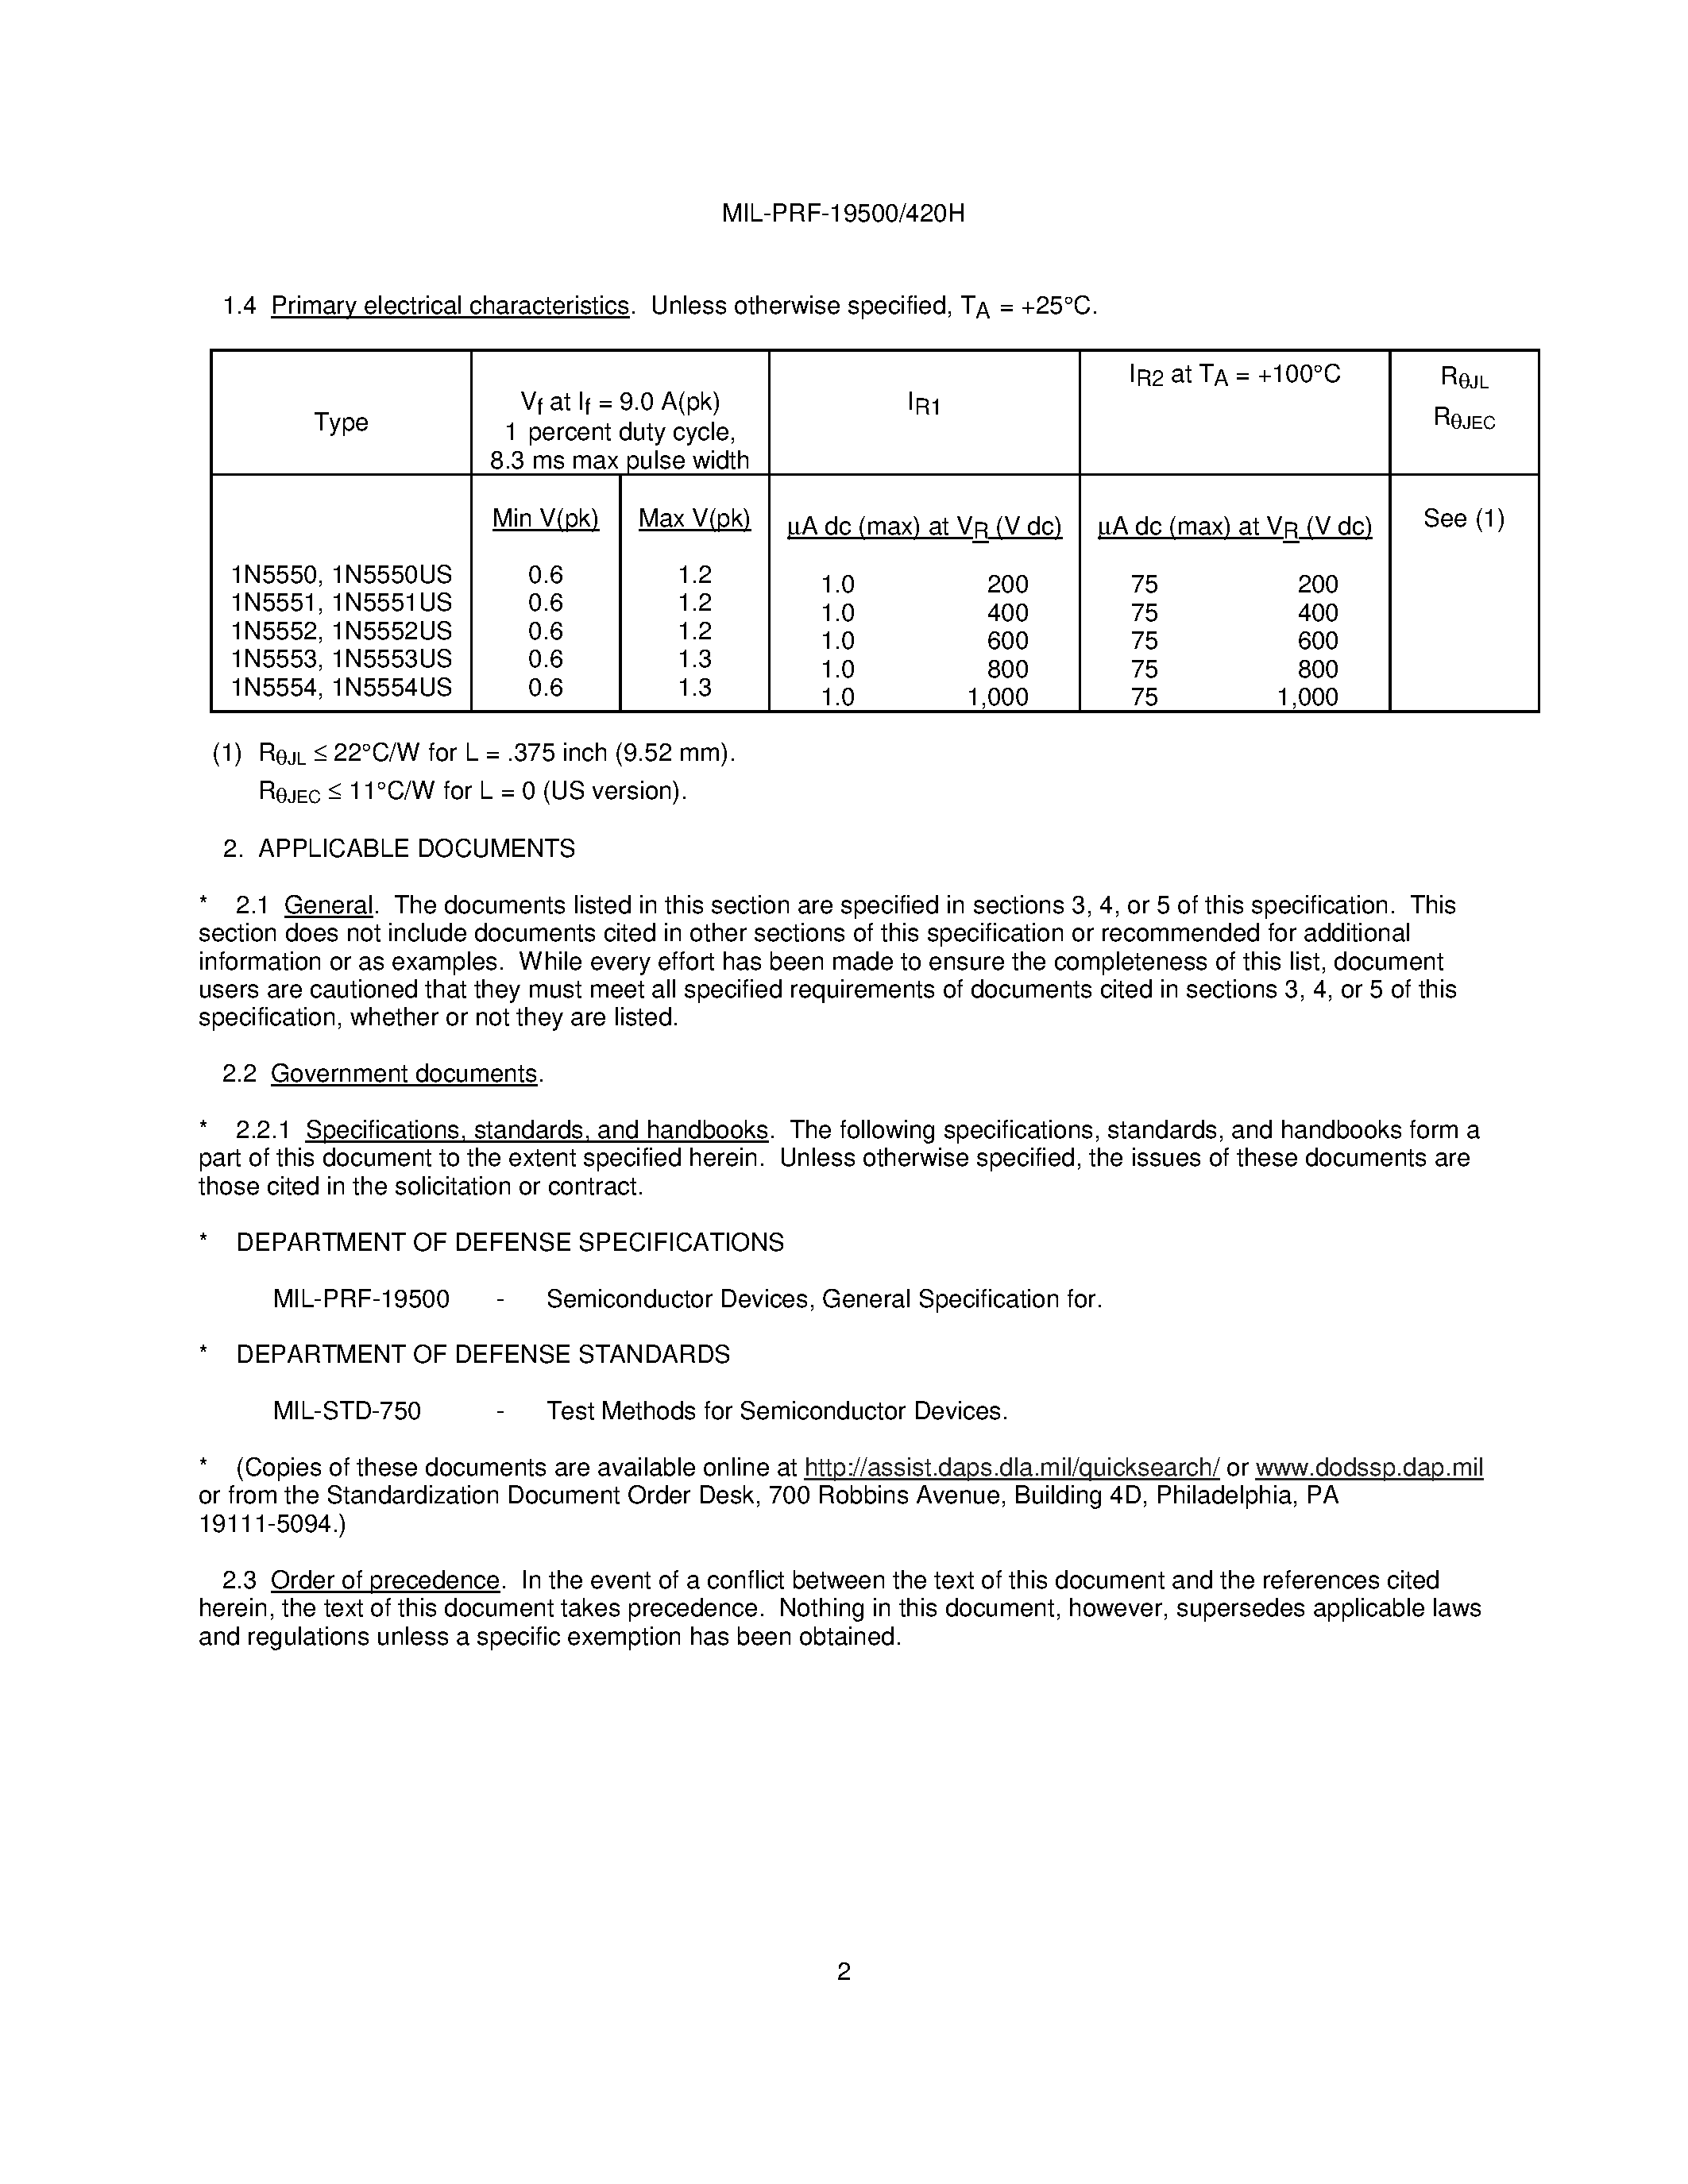 Datasheet JANTX1N5550 - (1N5550 / 1N5551 / 1N5552 / 1N5553 / 1N5554) page 2